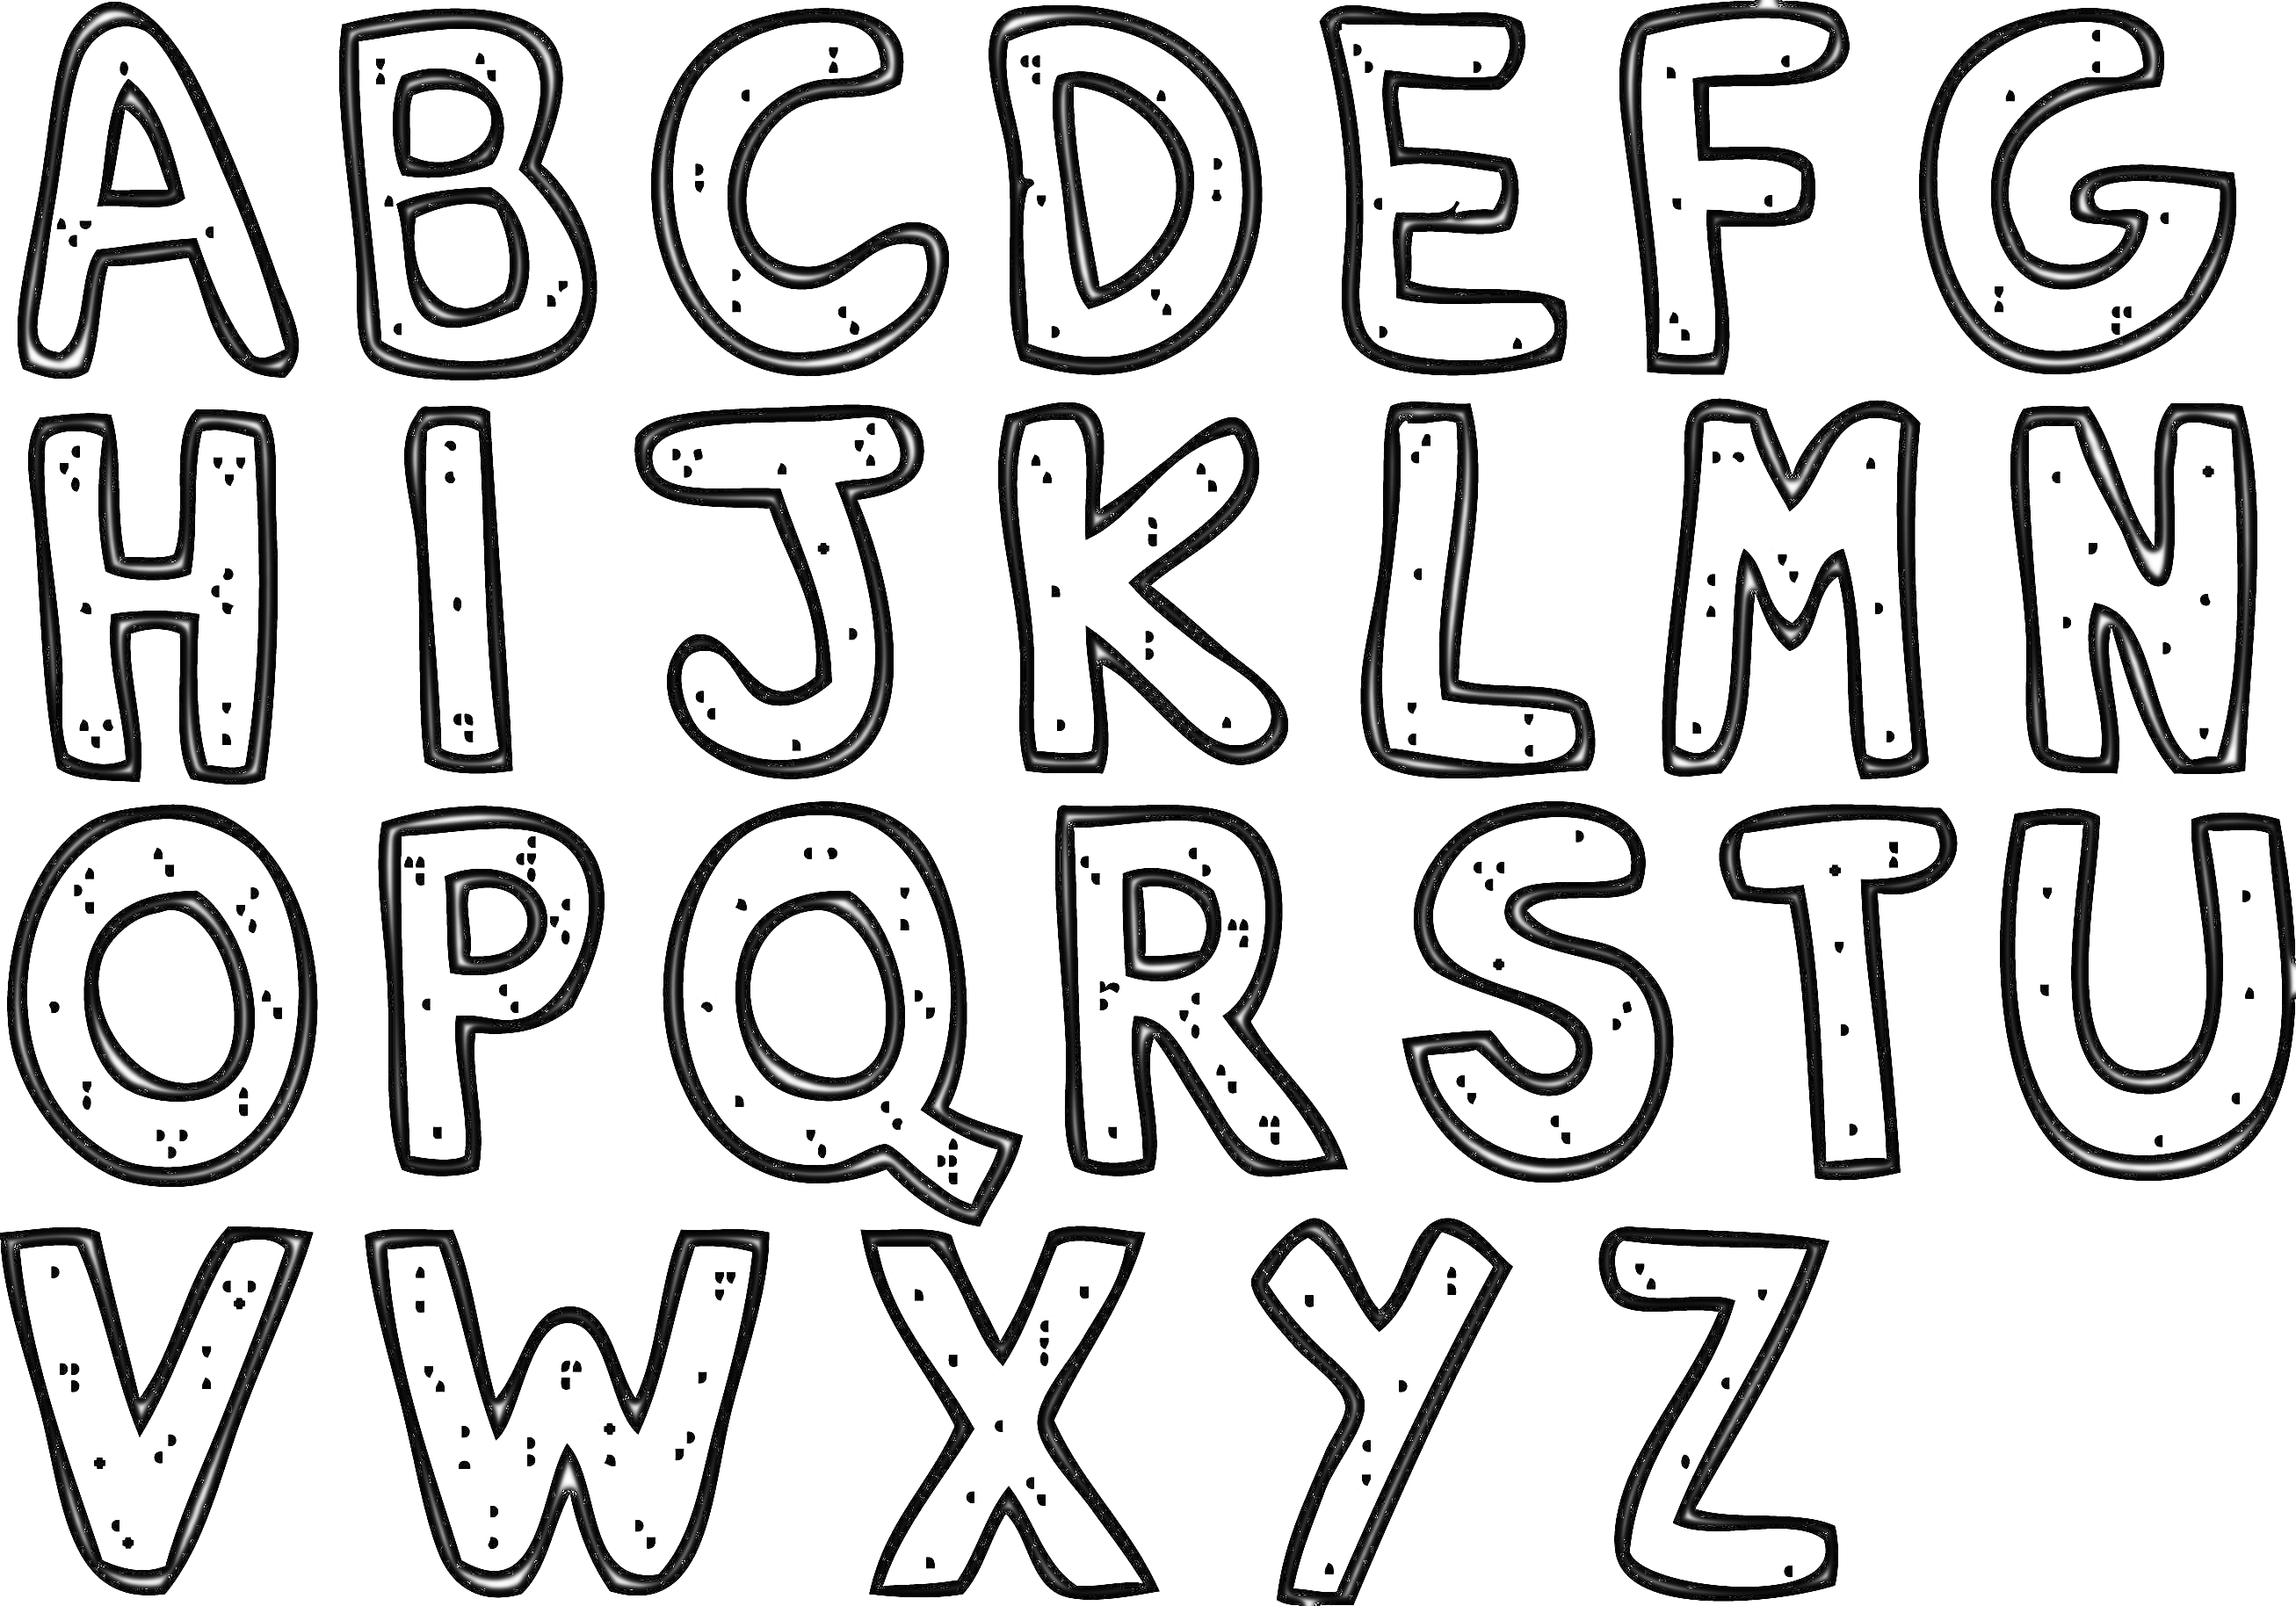 Раскраска раскраска с изображением английских букв алфавита от A до Z, буквы с точечными узорами